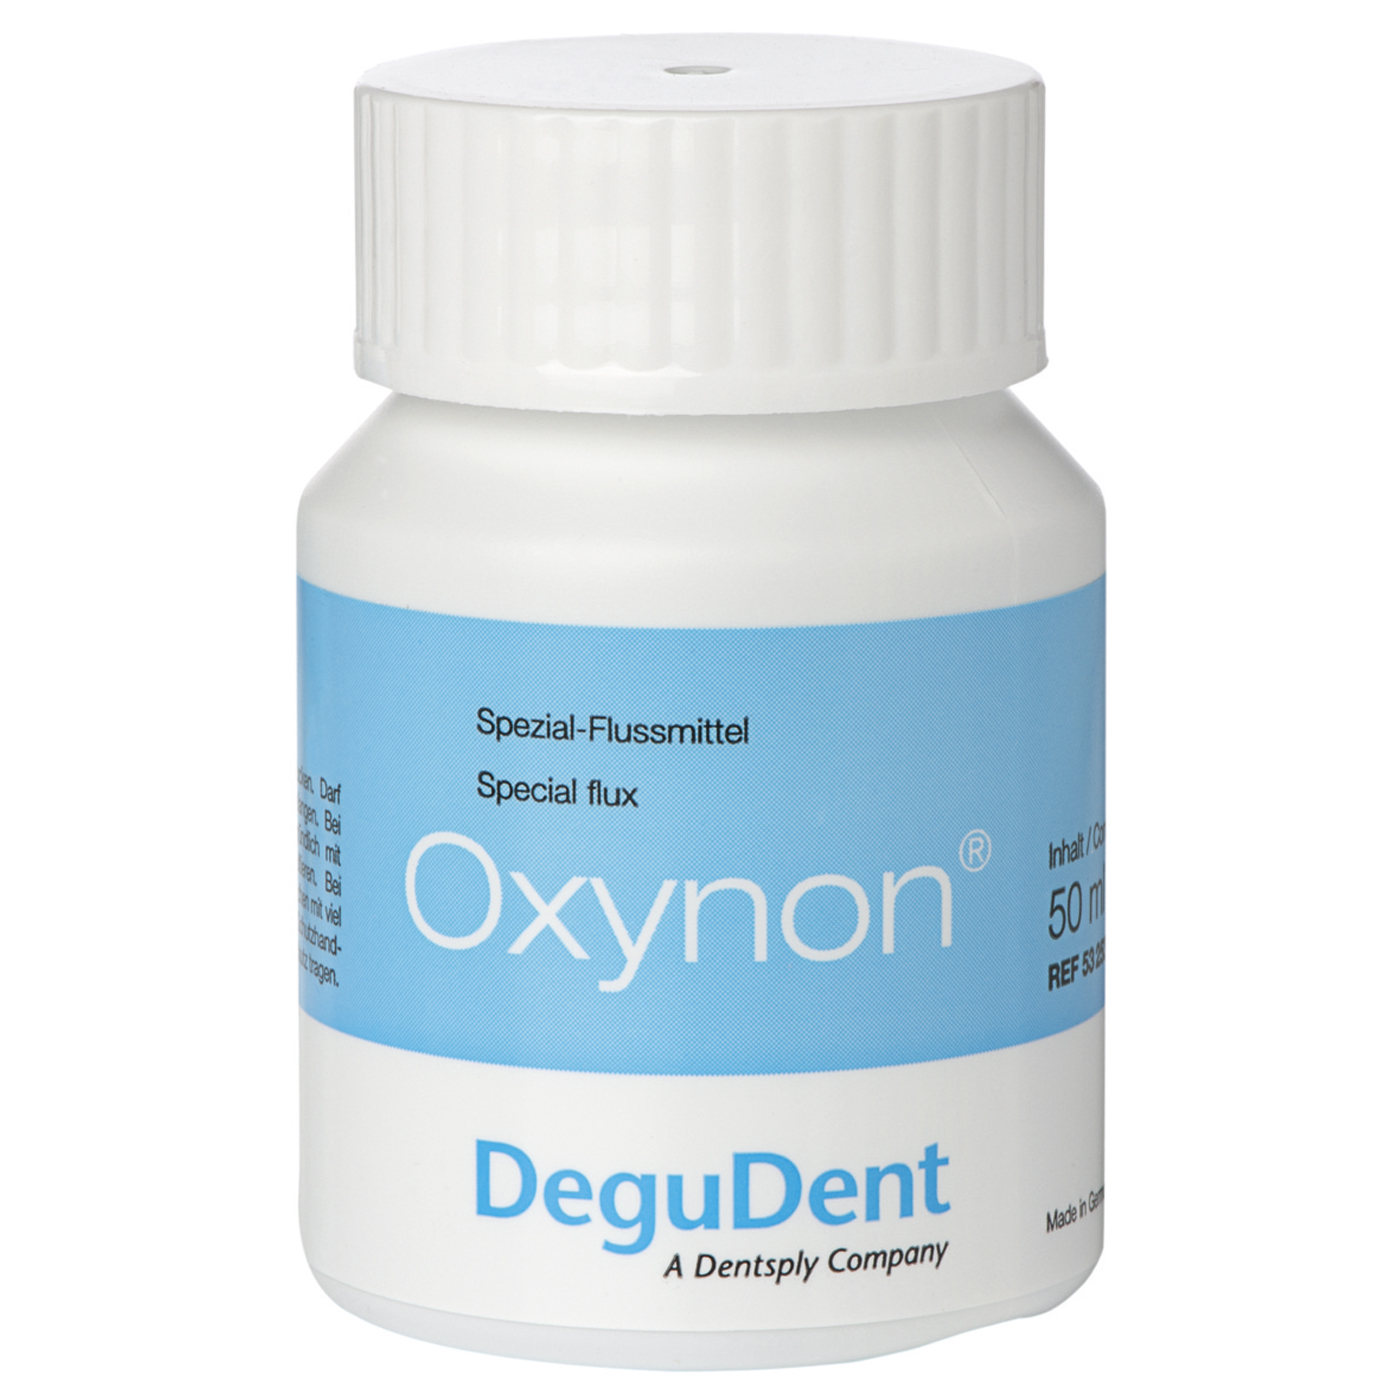 Oxynon Special Flux - 50 ml